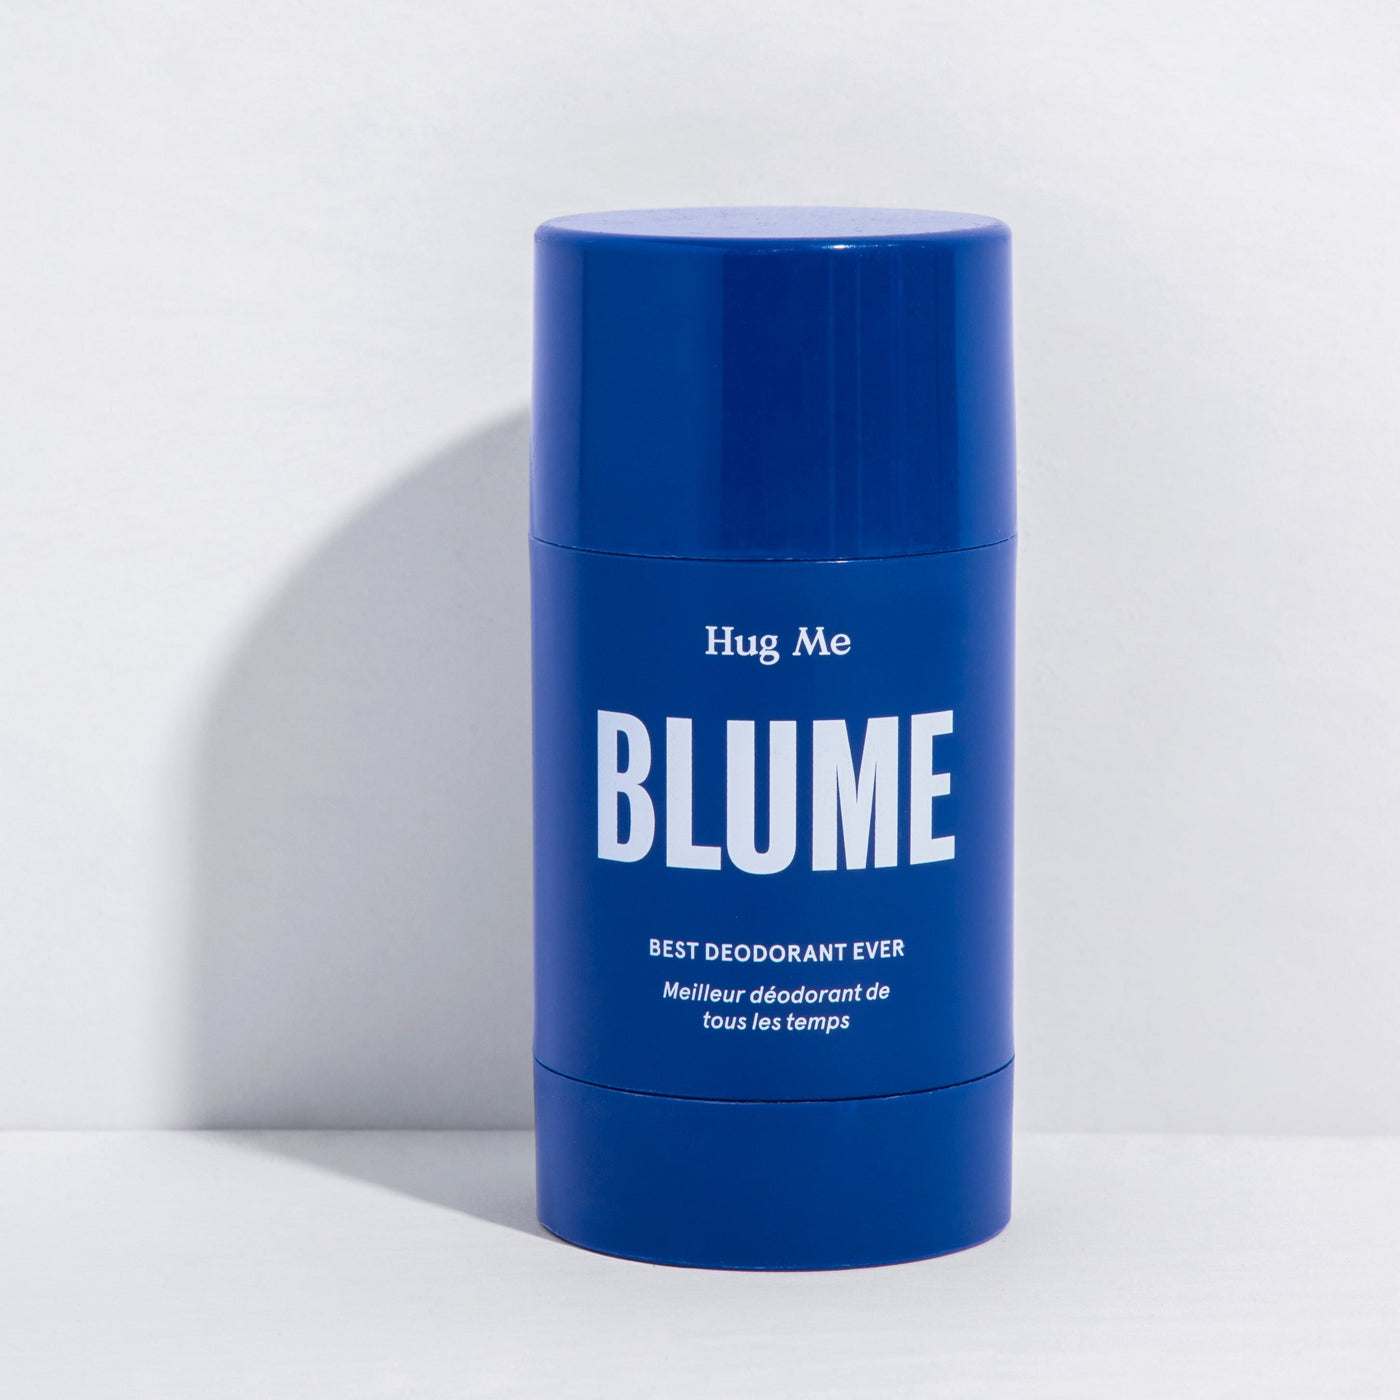 Hug Me Probiotic Deodorant by Blume